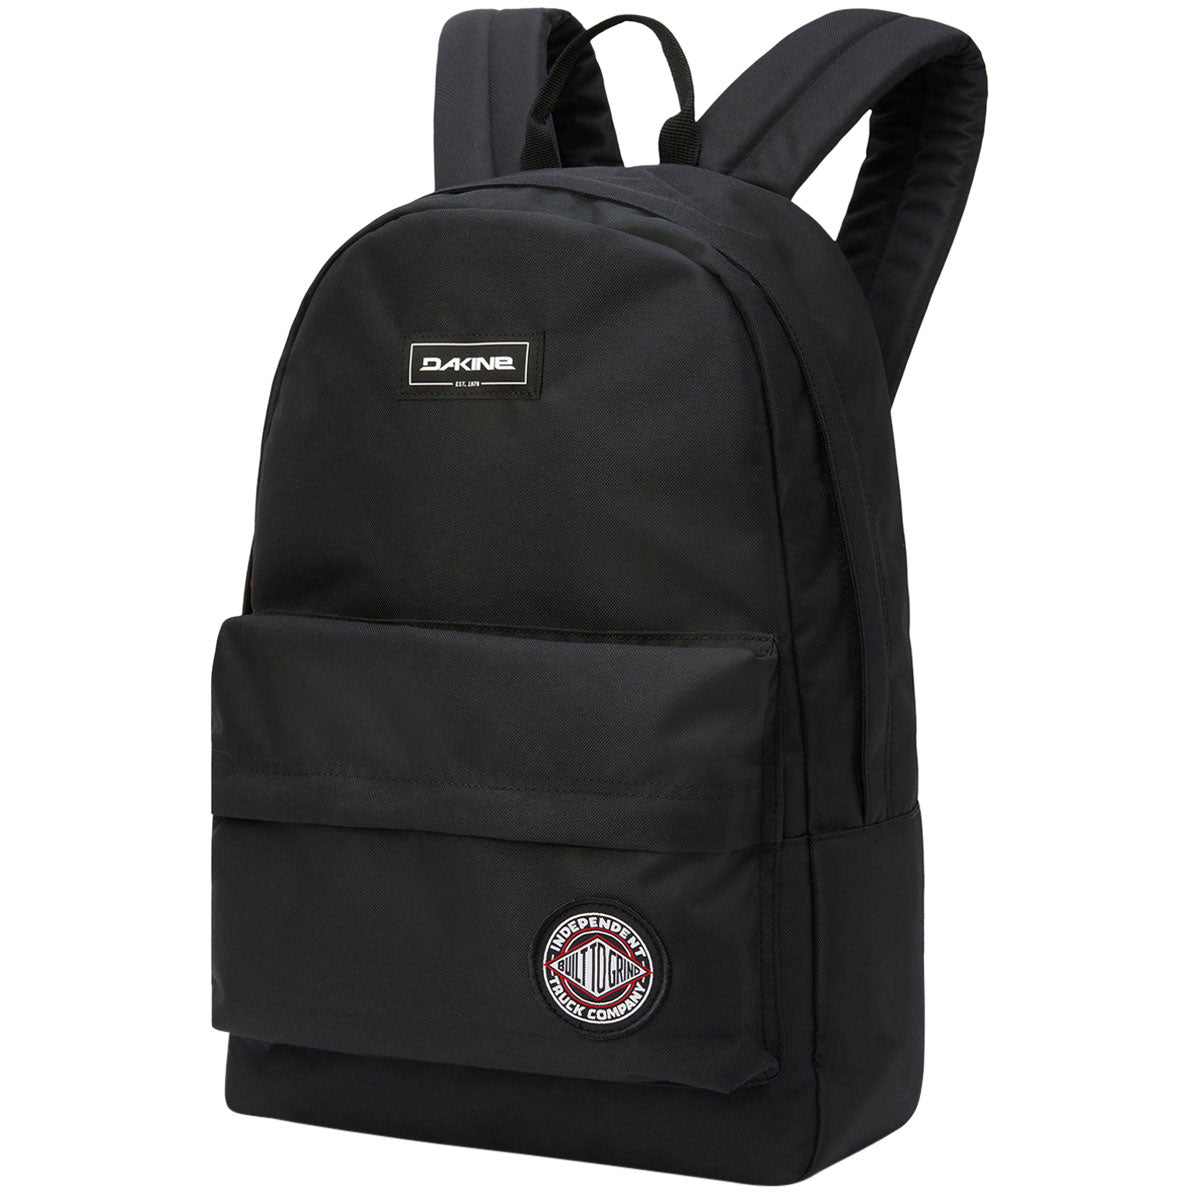 Dakine x Independent 365 Pack 21L Backpack - Black image 1